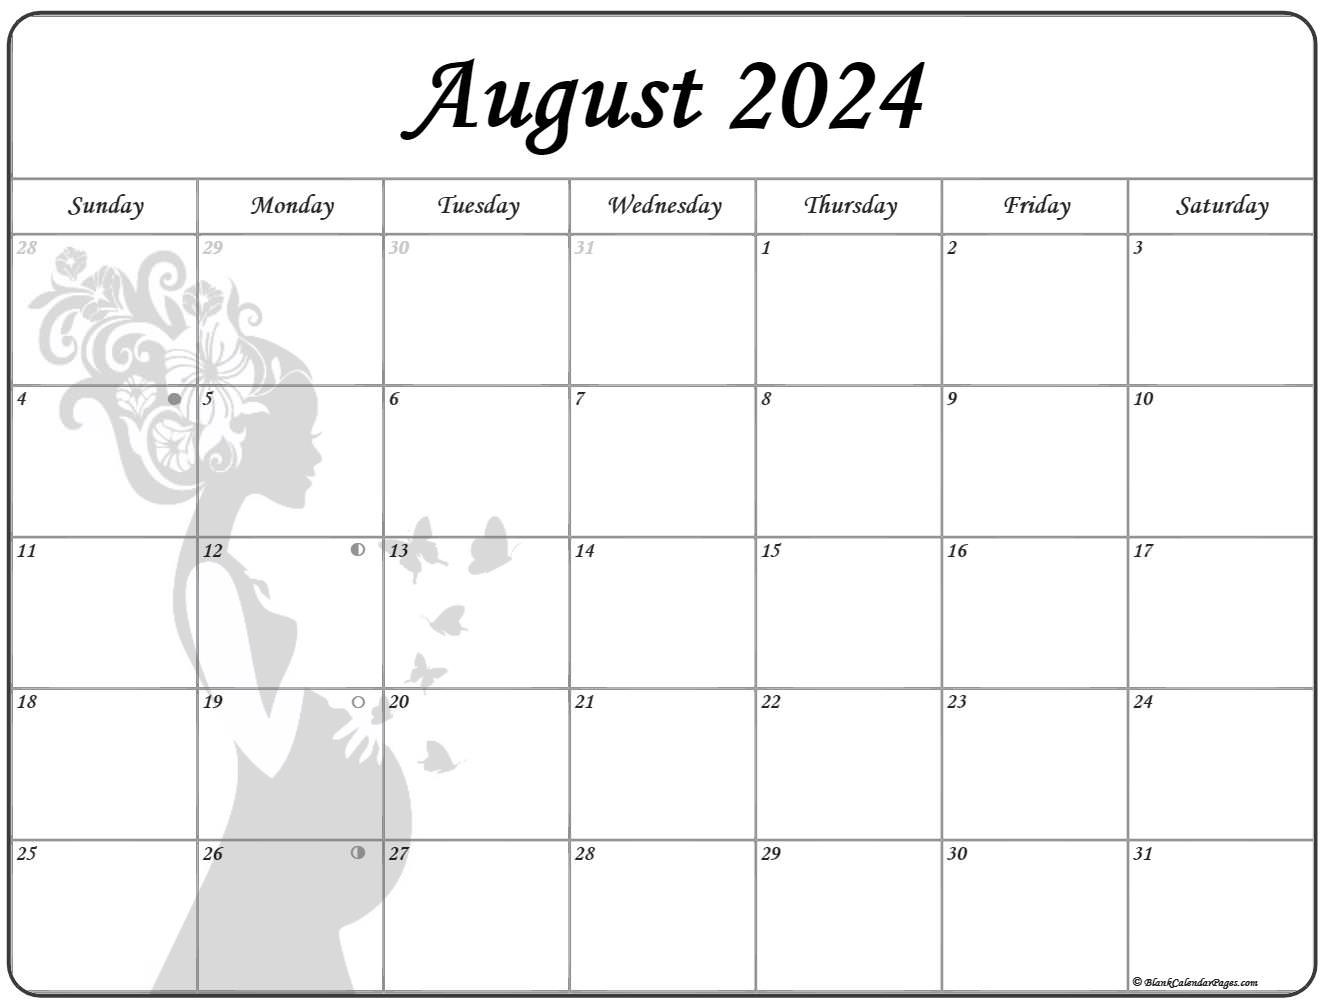 August 2020 Pregnancy Calendar | Fertility Calendar1767 x 1339